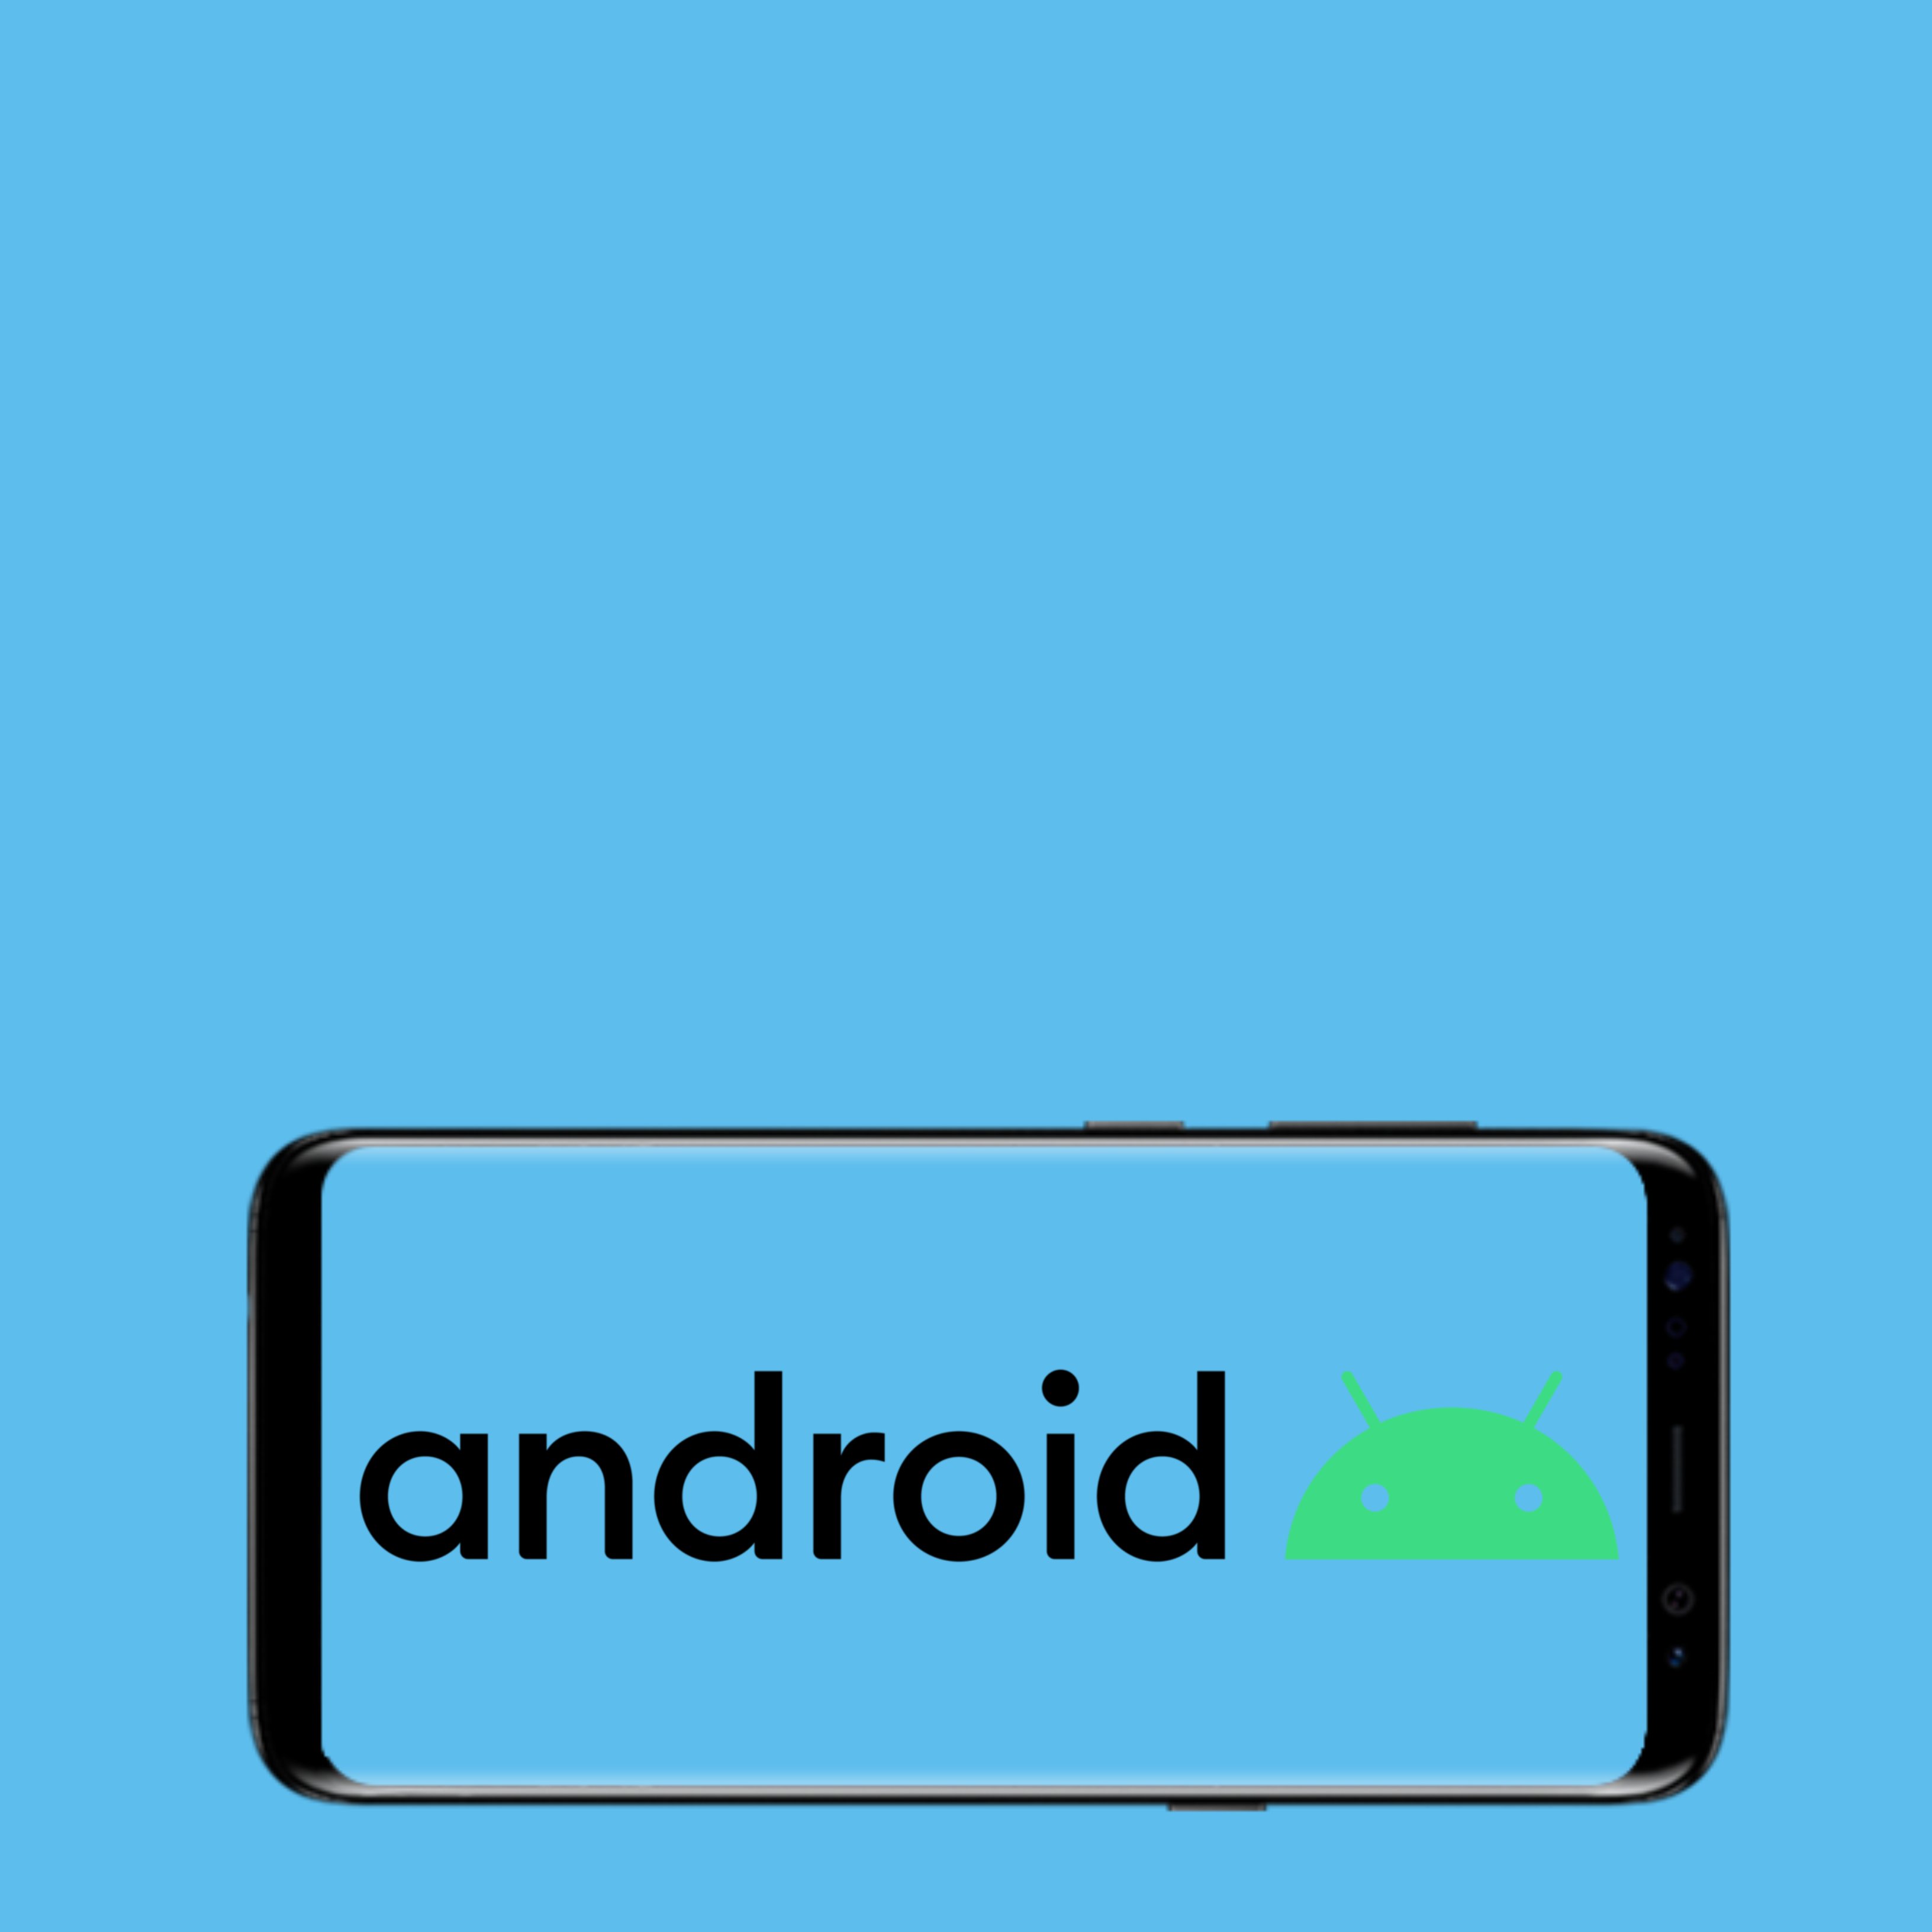 Ja ha arribat Android 10 i aquestes són les seves principals novetats